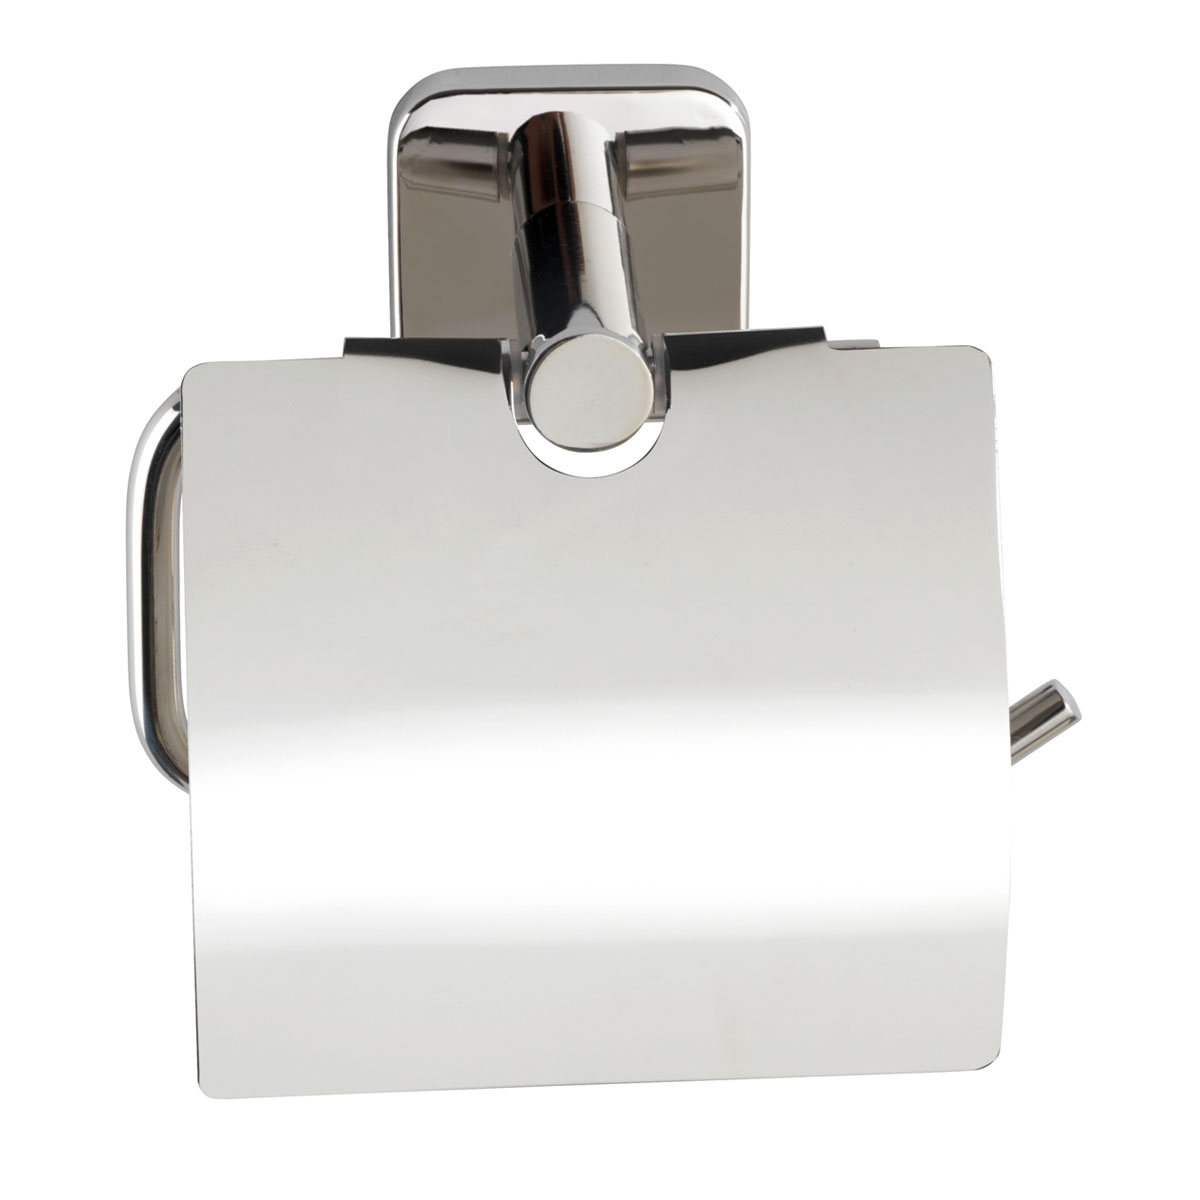 Toilettenpapierhalter Mezzano mit Deckel 503632 | Wenko